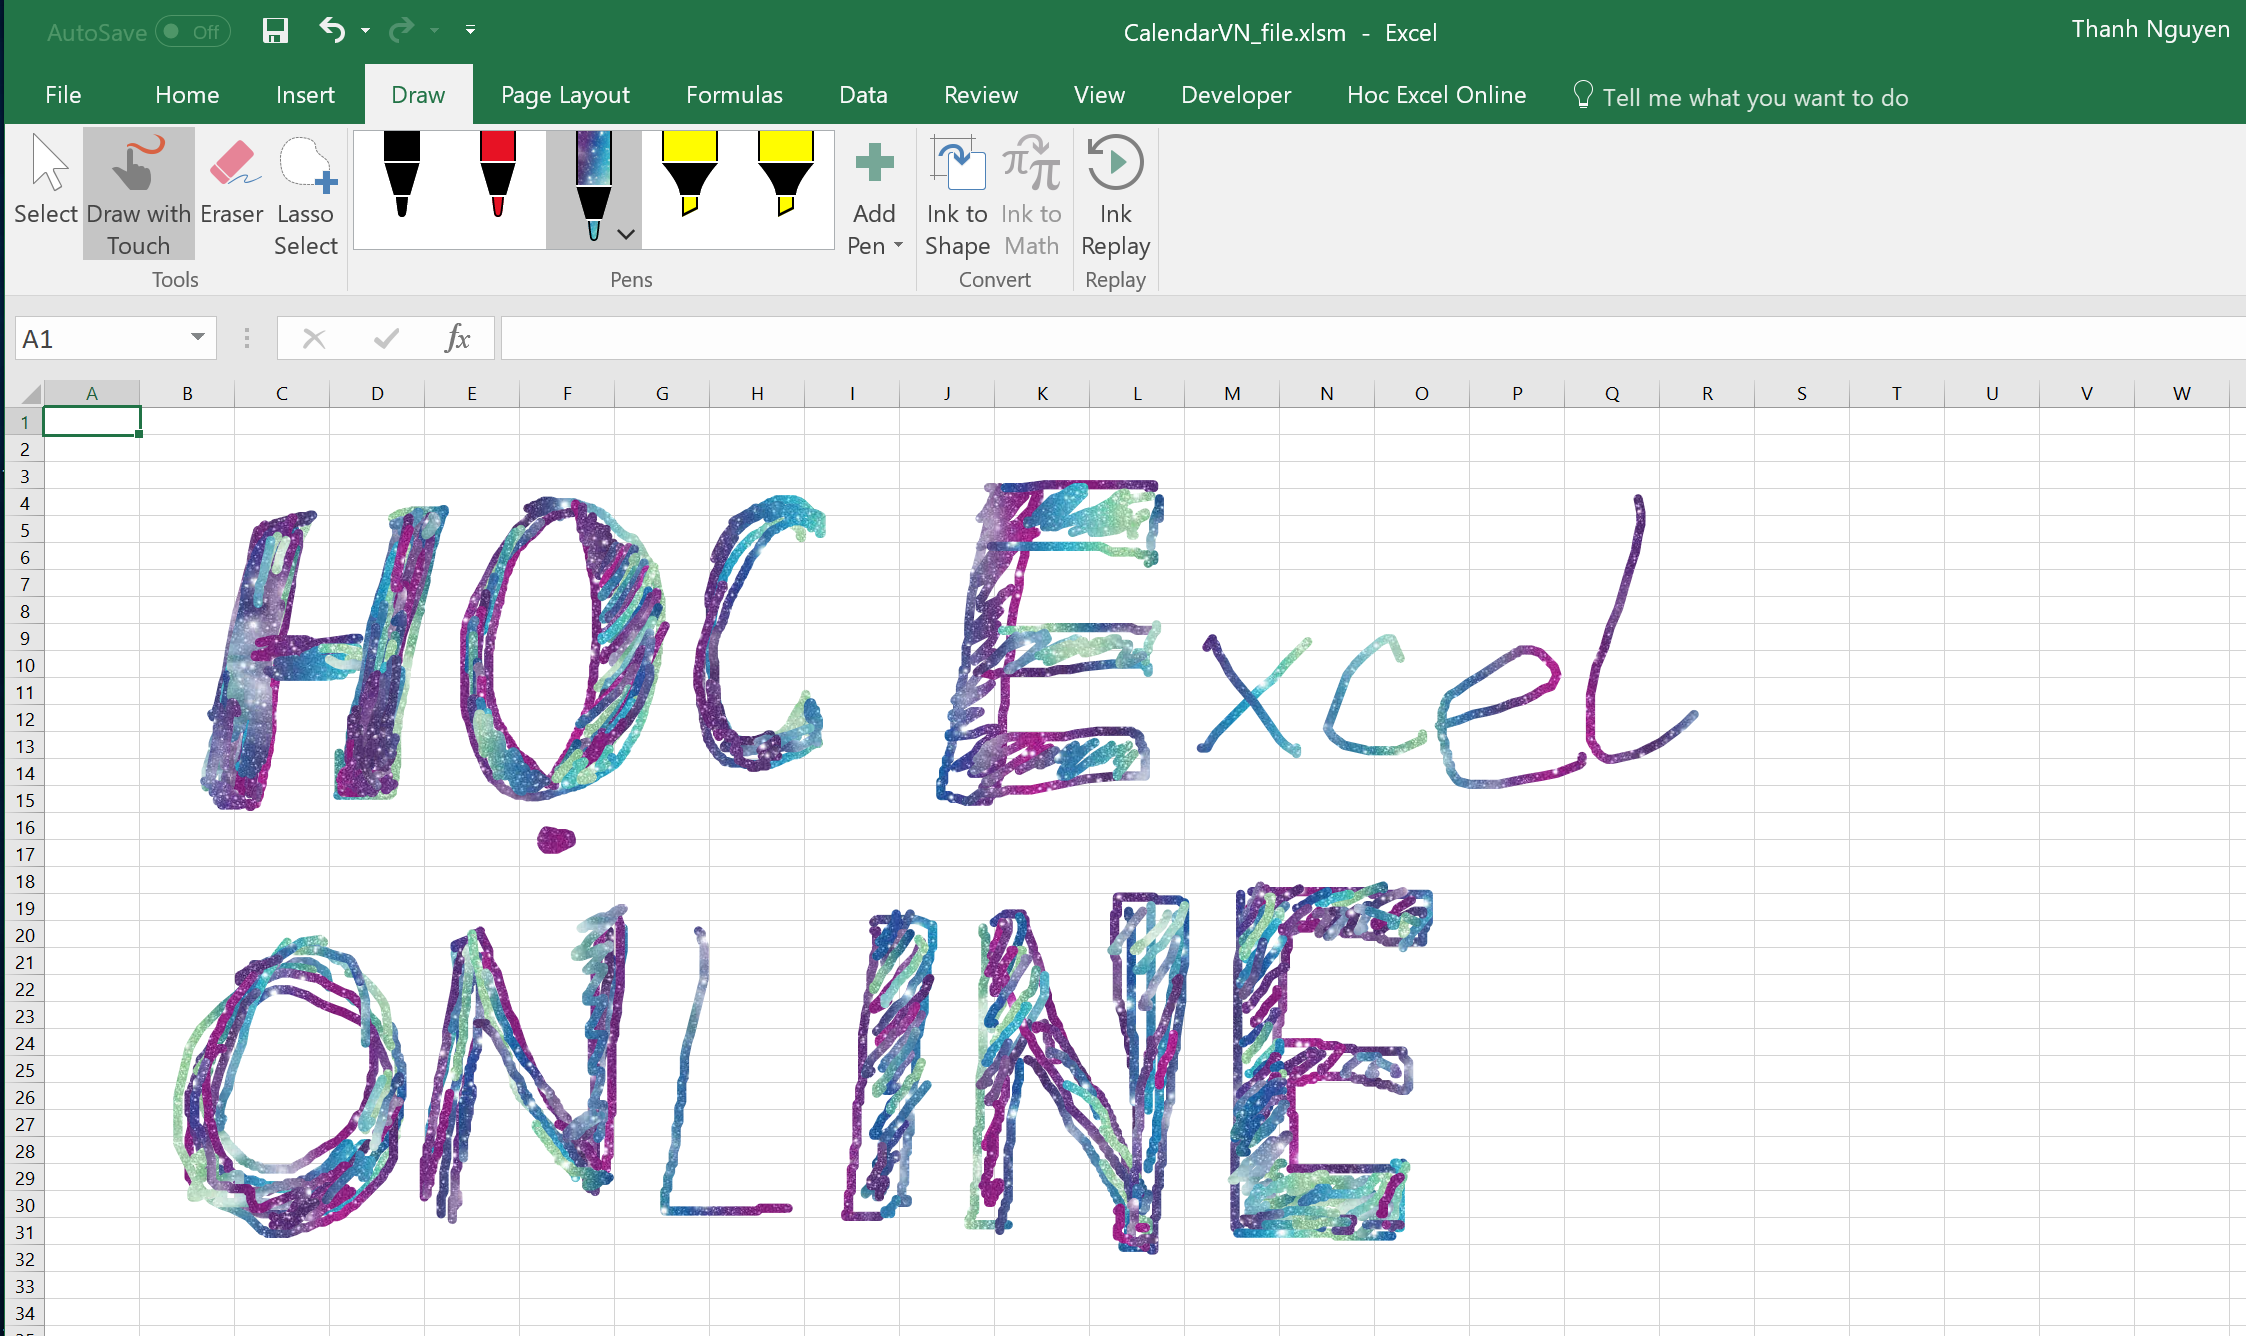 Draw trong Excel 2016: Với tính năng Draw trong Excel 2016, bạn có thể tạo ra những hình ảnh một cách dễ dàng và nhanh chóng. Điều này sẽ giúp cho tài liệu của bạn trở nên thú vị hơn và dễ dàng để hiểu hơn. Hãy cùng thực hiện những ý tưởng sáng tạo của bạn với tính năng Draw trong Excel